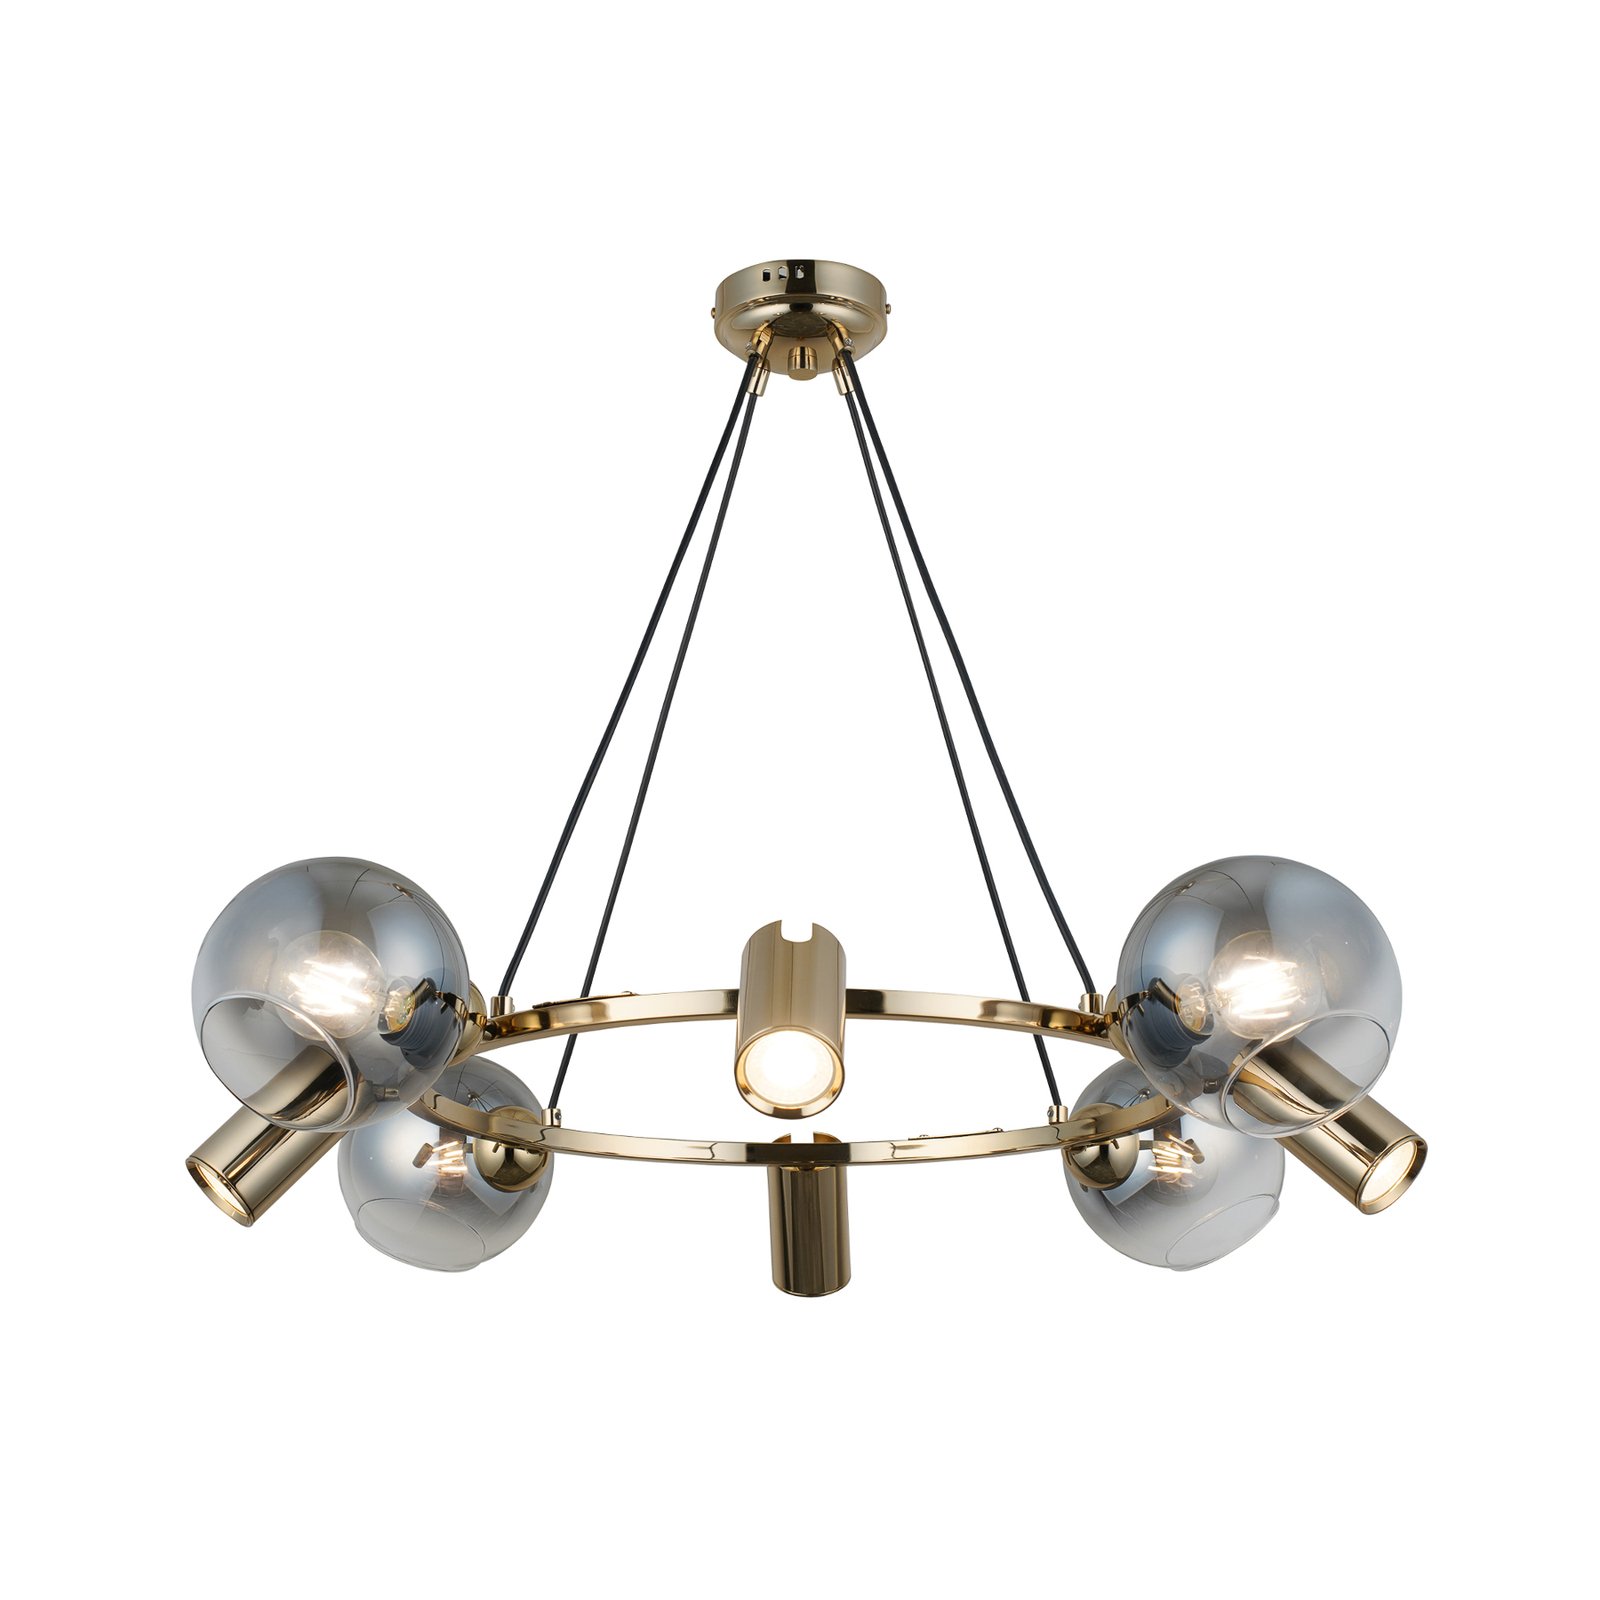 Hanglamp Zerde 4+4, Ø 82 cm, goud, 8-lamps